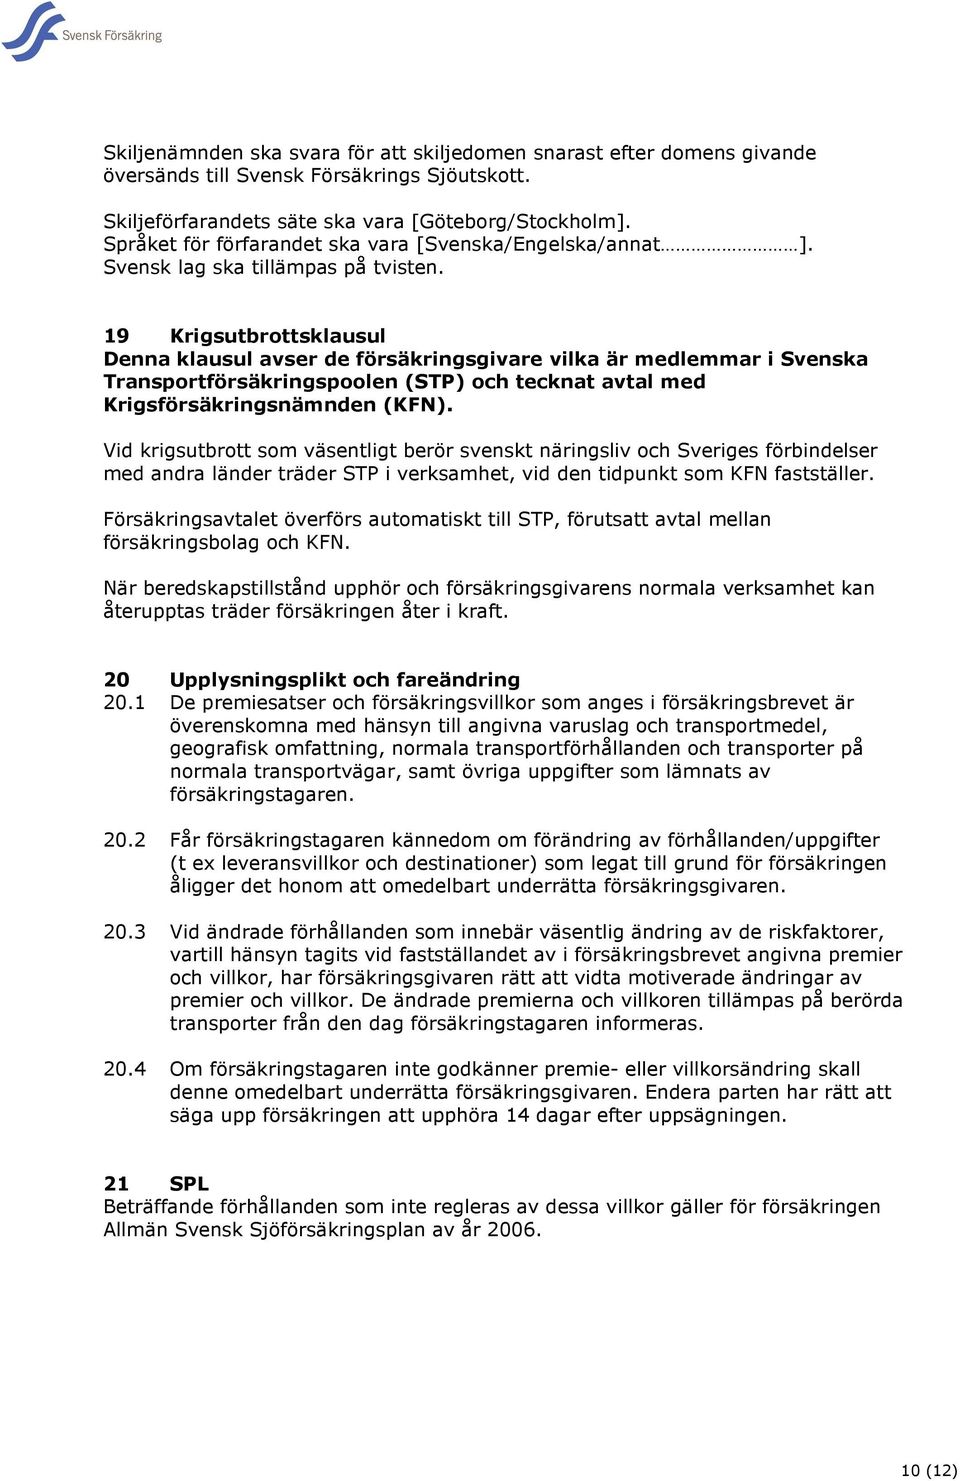 19 Krigsutbrottsklausul Denna klausul avser de försäkringsgivare vilka är medlemmar i Svenska Transportförsäkringspoolen (STP) och tecknat avtal med Krigsförsäkringsnämnden (KFN).